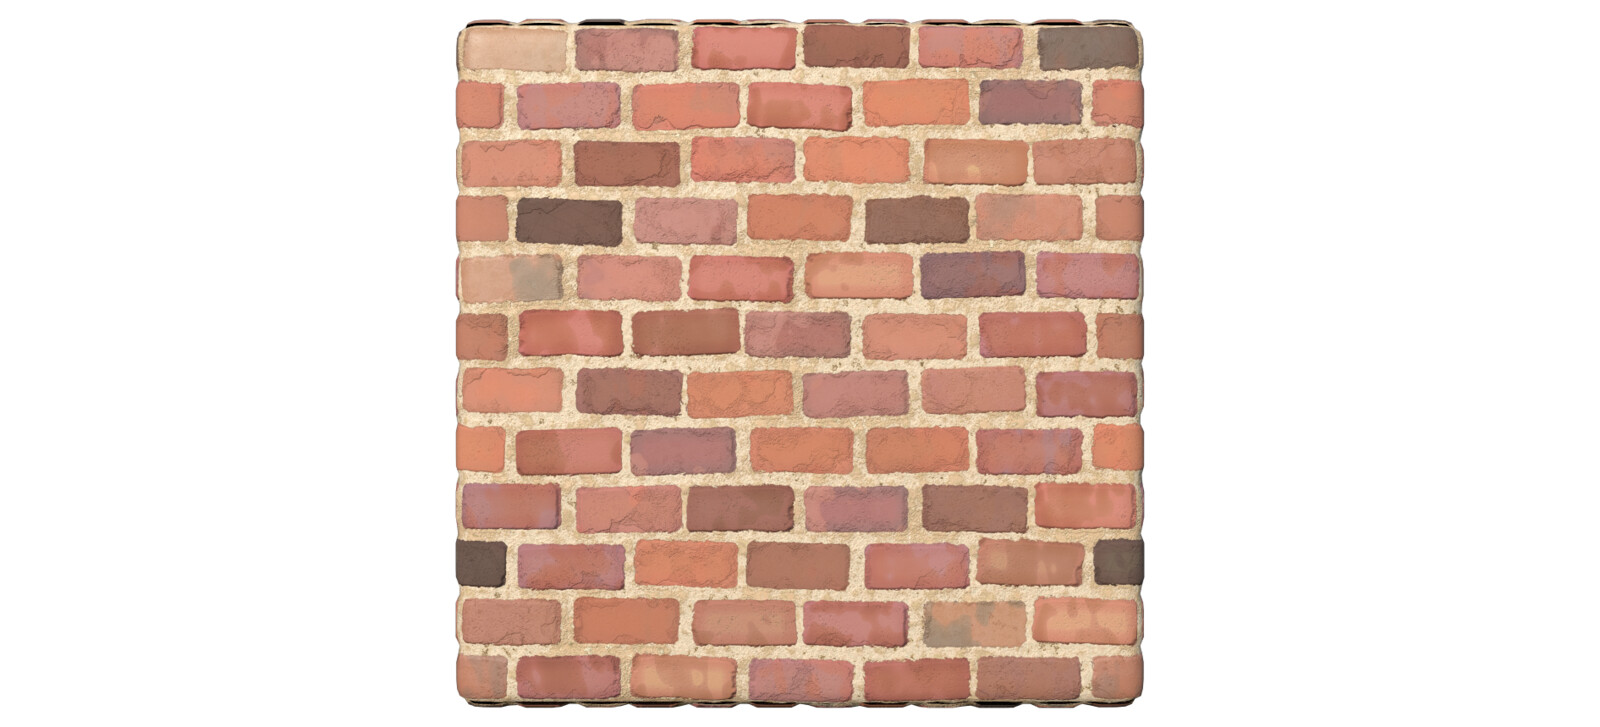 one tile of bricks